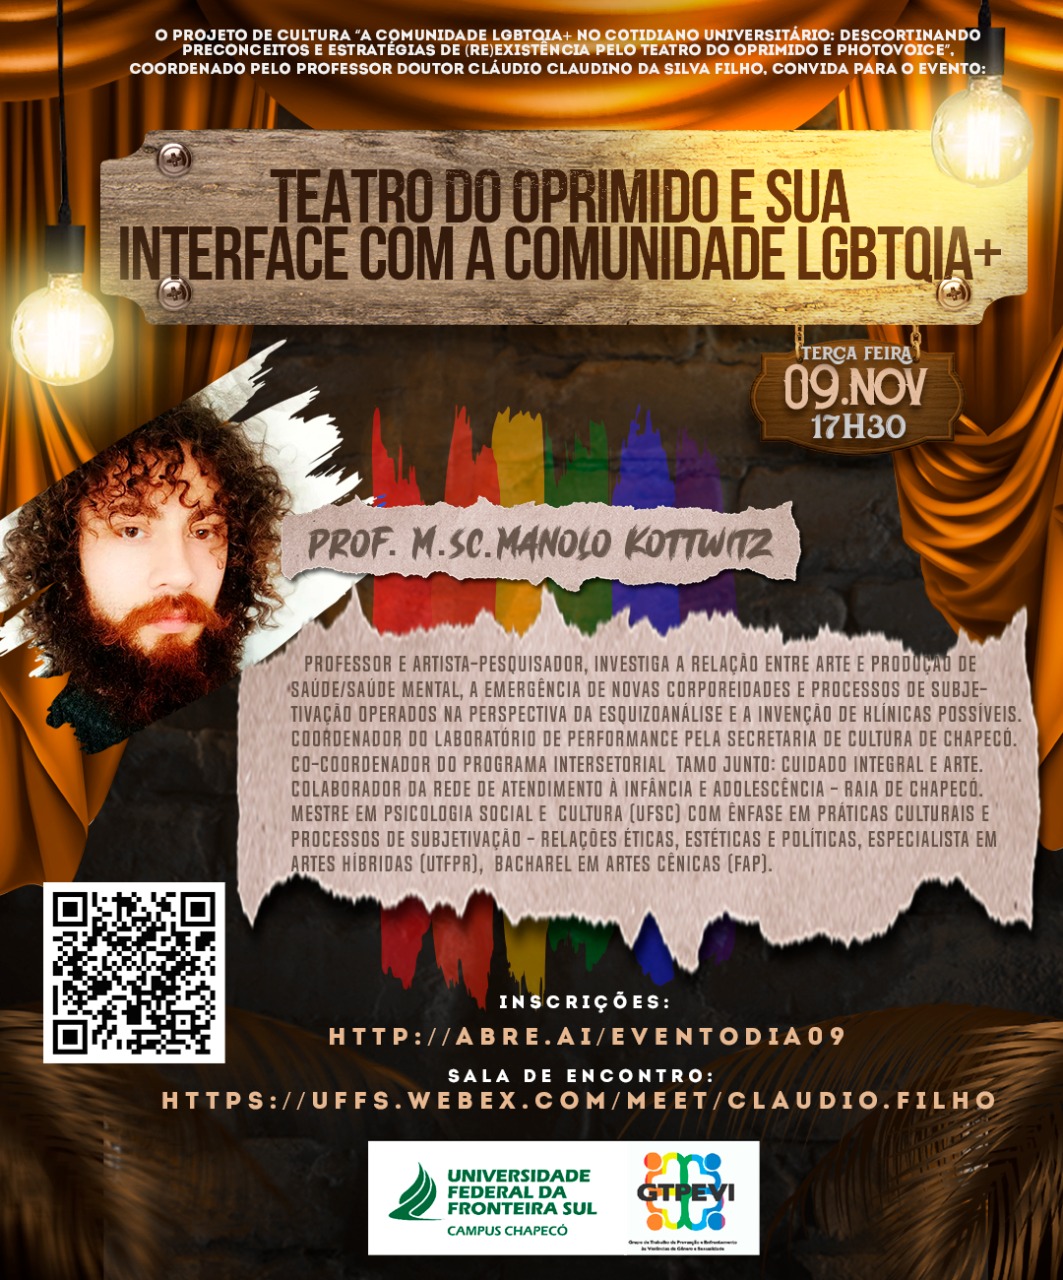 Teatro do Oprimido e sua interface com a comunidade LGBTQIA+